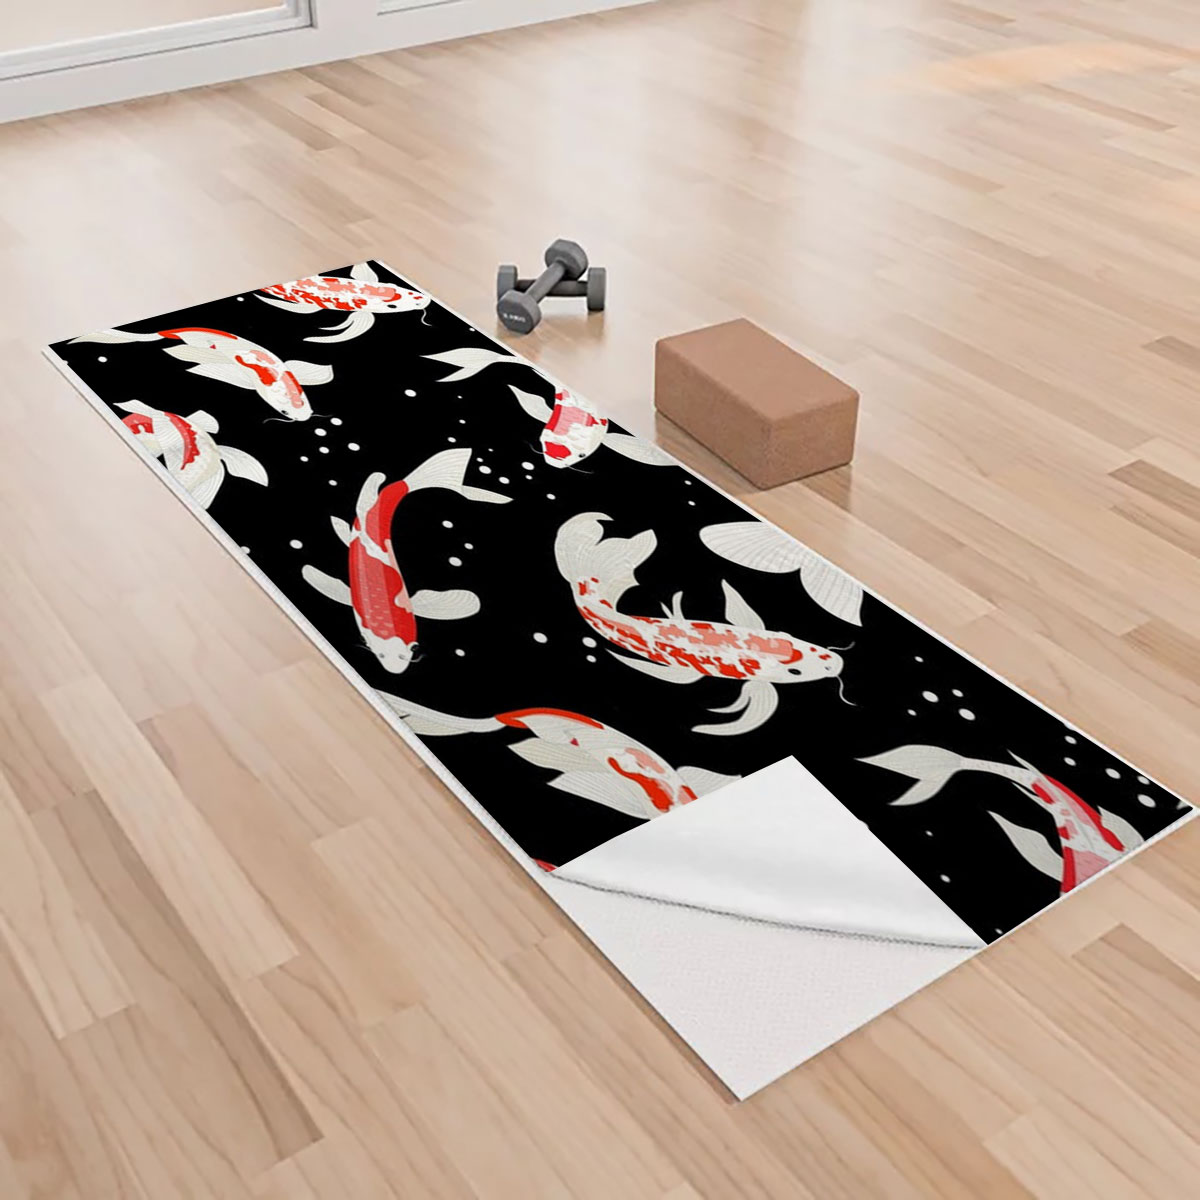 Black Water Koi Fish Yoga Towels